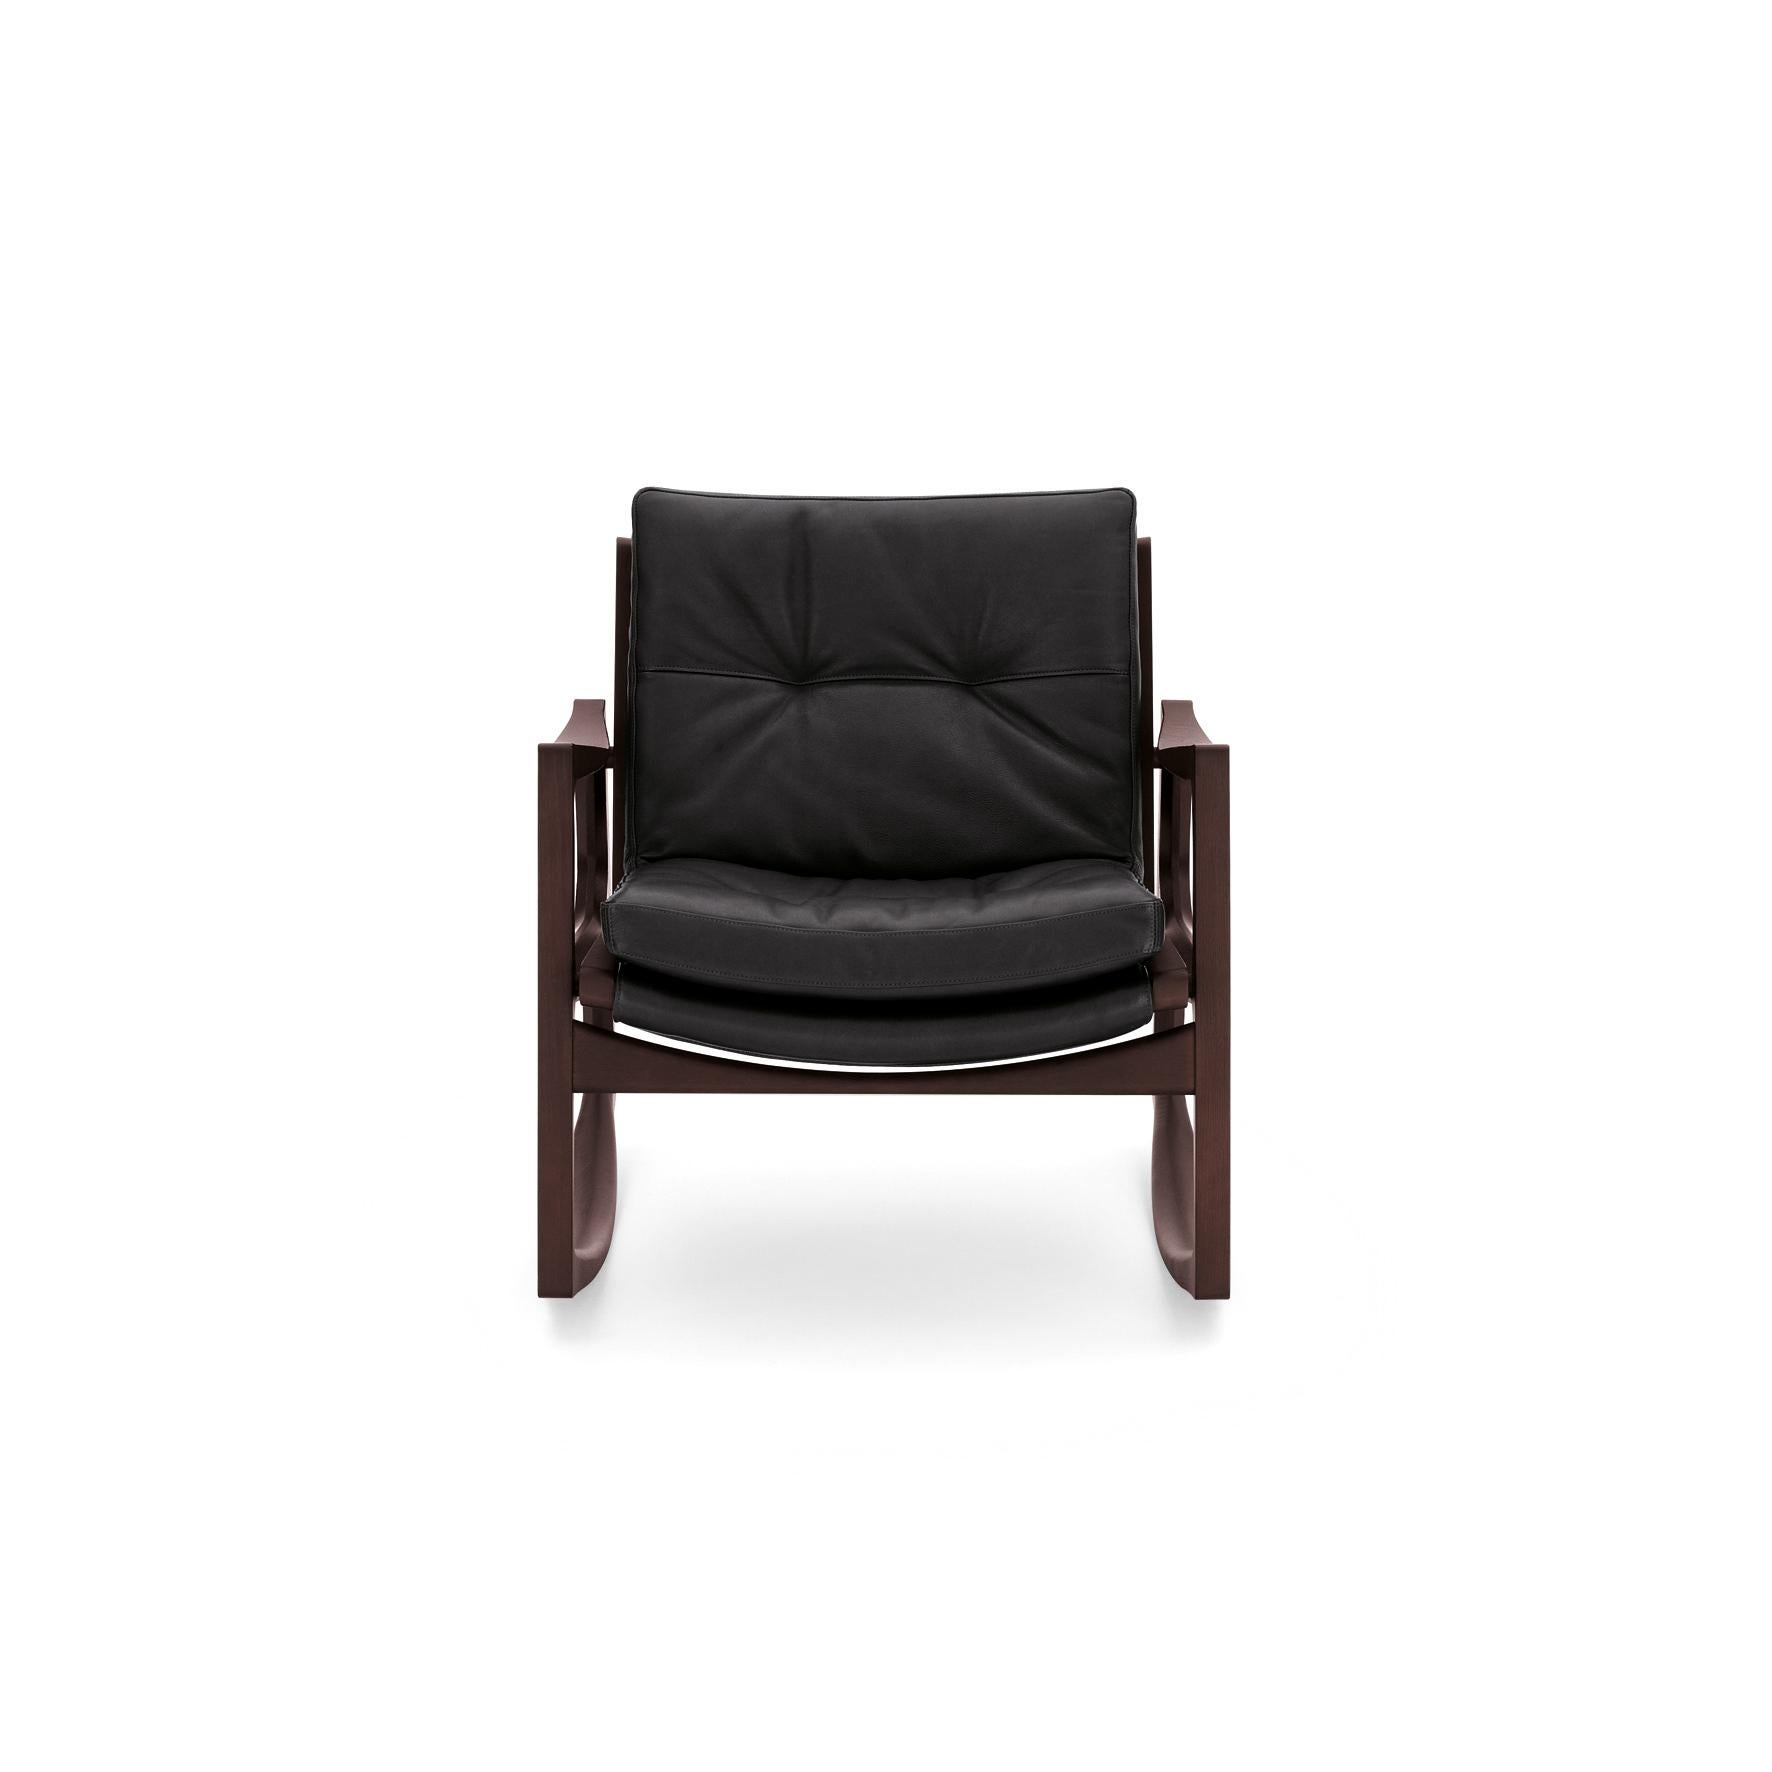 La chaise à bascule Euvira de Jader Almeida est un mélange magistral d'hier et d'aujourd'hui, de légèreté et de solidité. Avec ses lignes fluides orchestrées avec précision, qui s'épaississent et s'effilent pour former un rythme agréable, la chaise